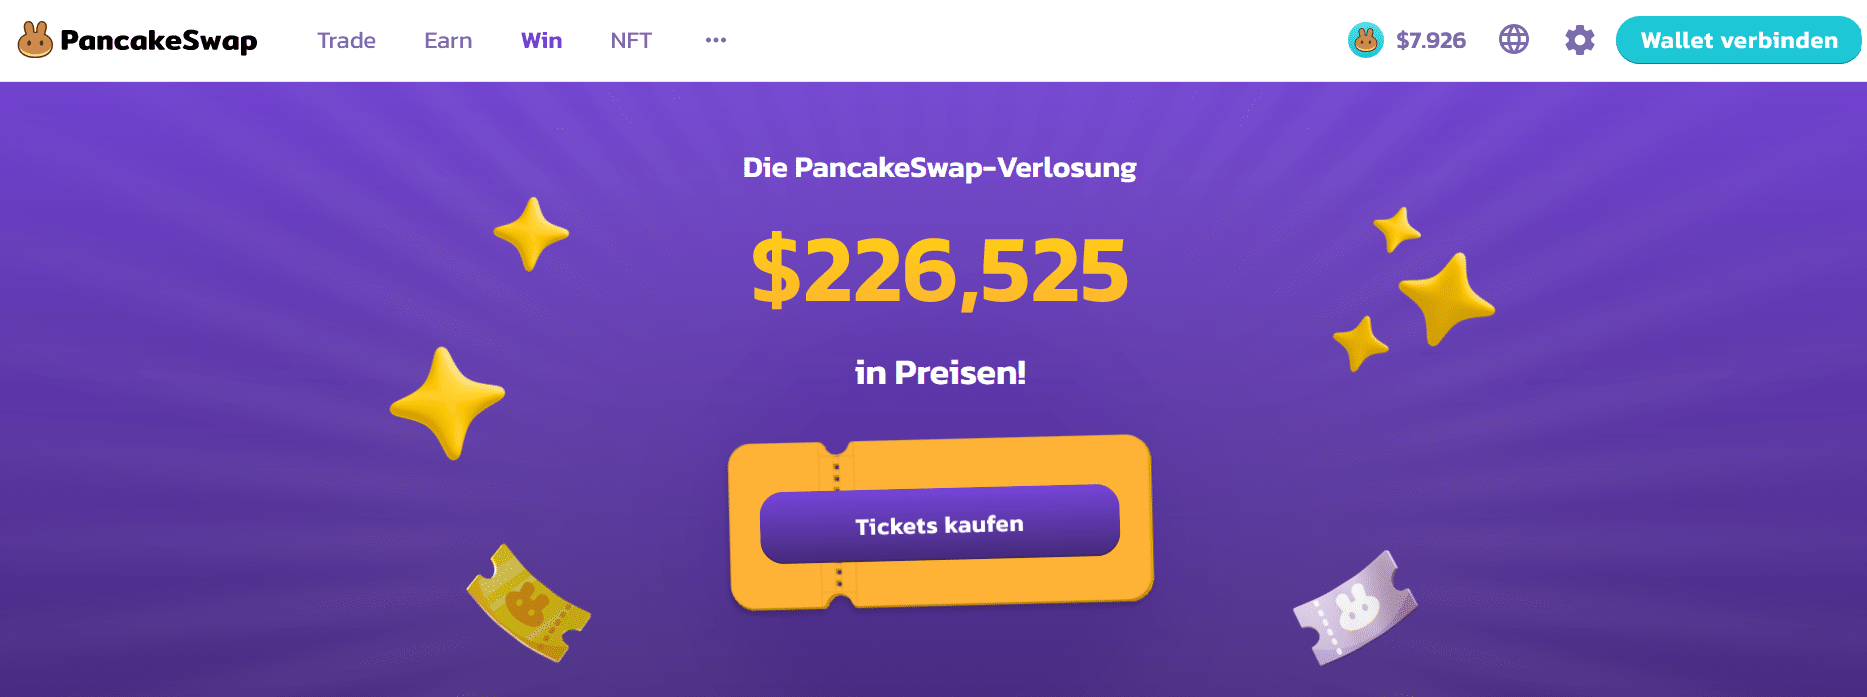 PancakeSwap Lottery